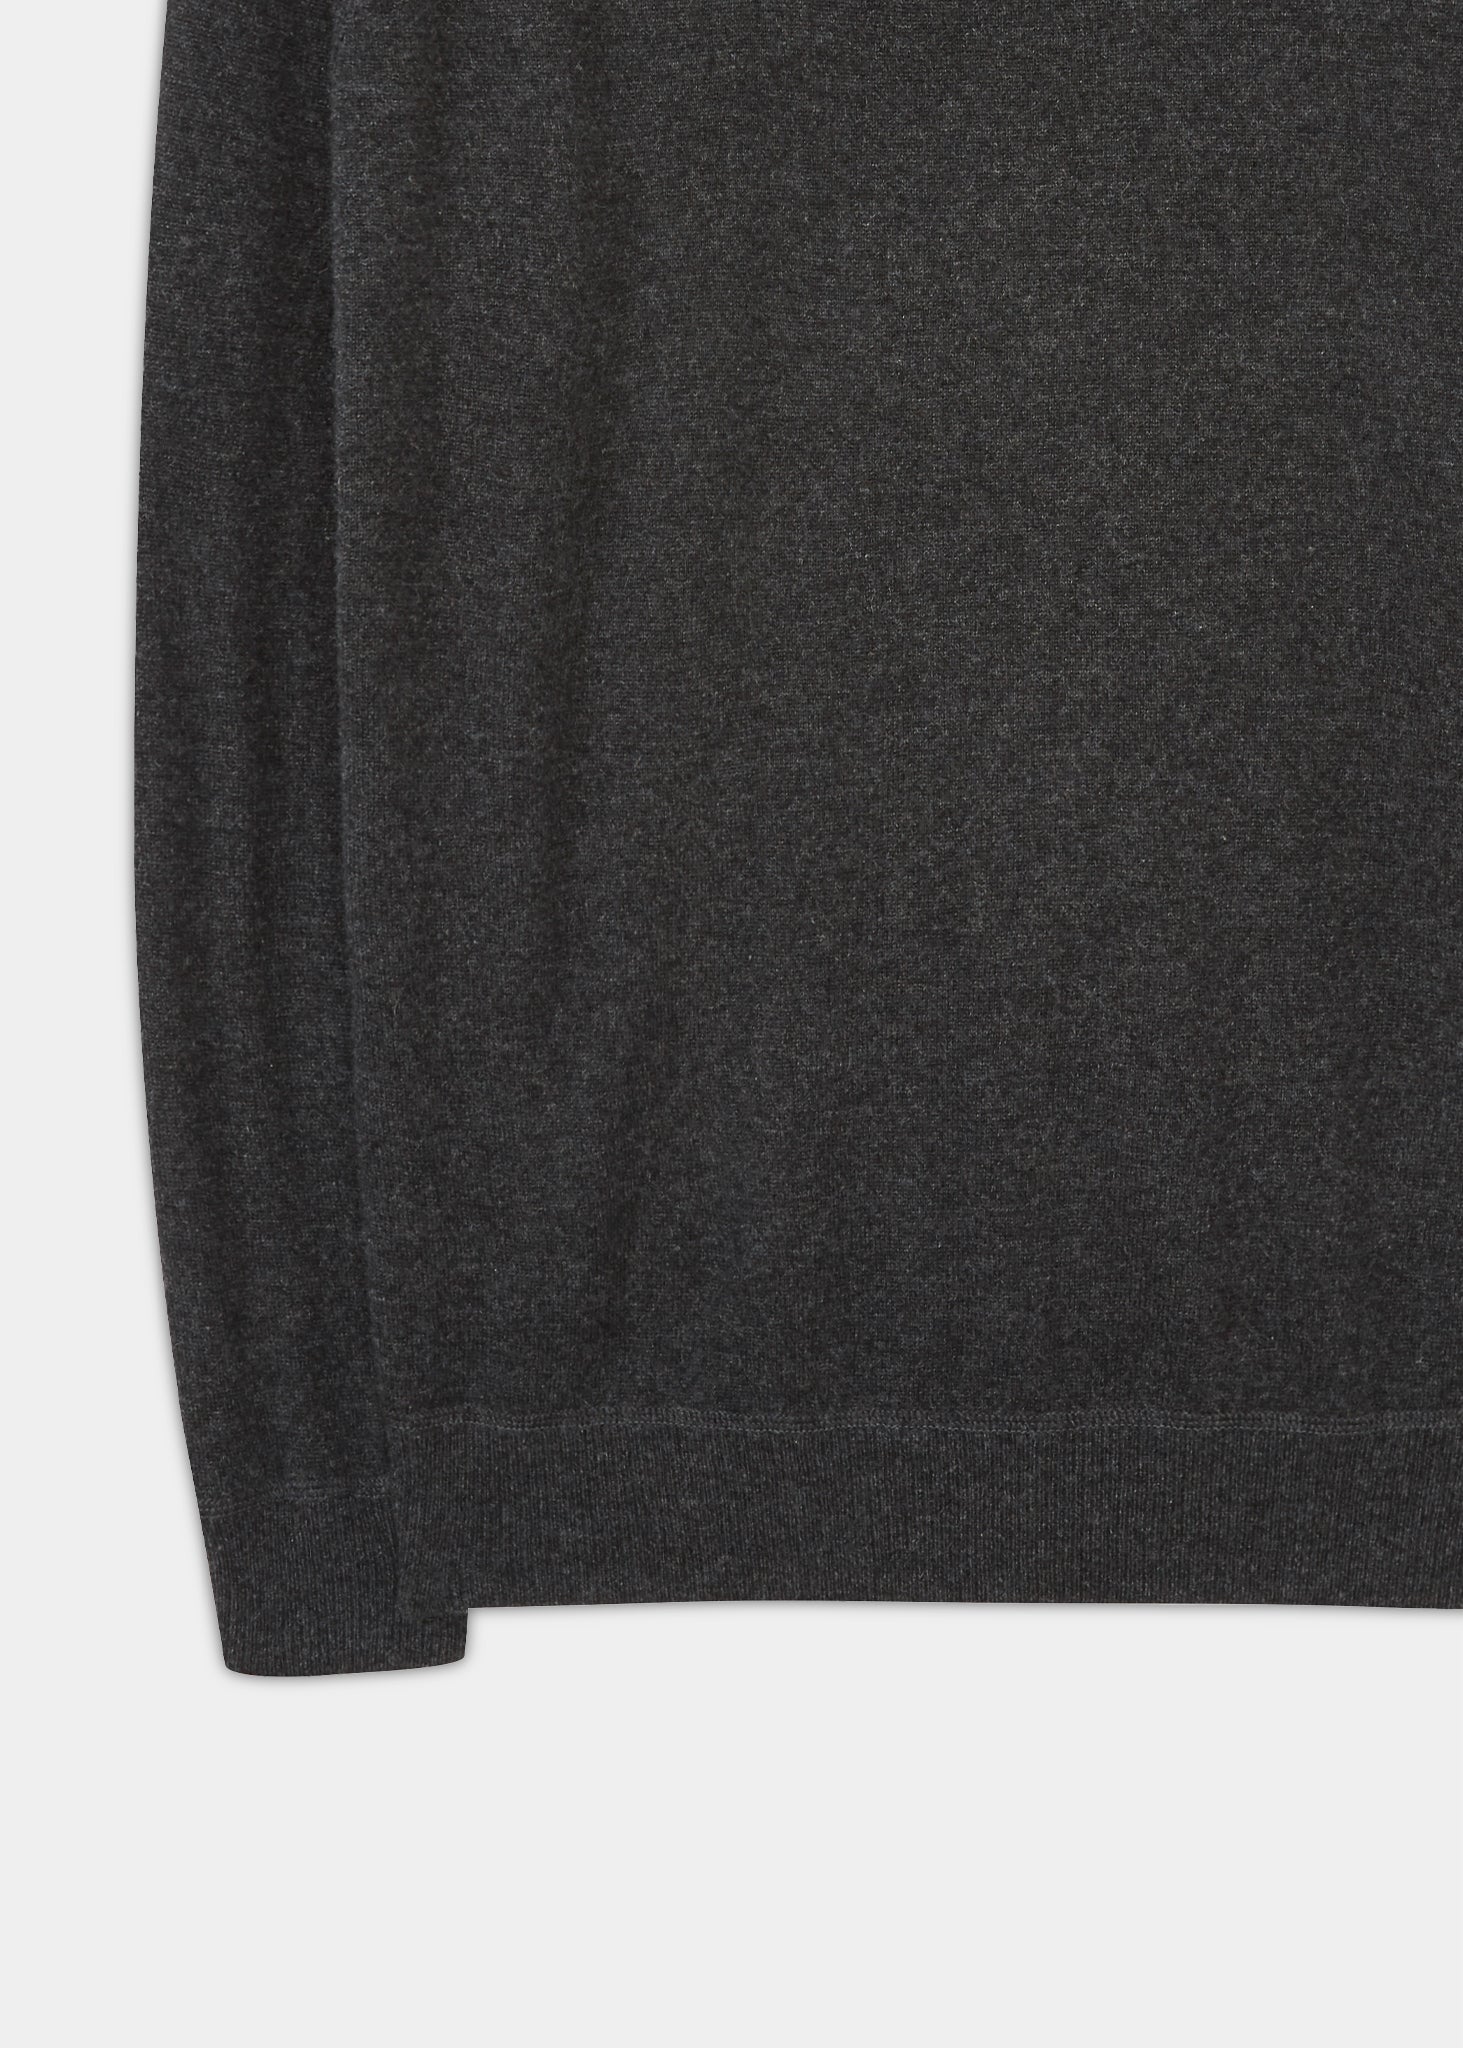 Assington Cashmere Charcoal Sweatshirt | Men's Cashmere Sweatshirt ...